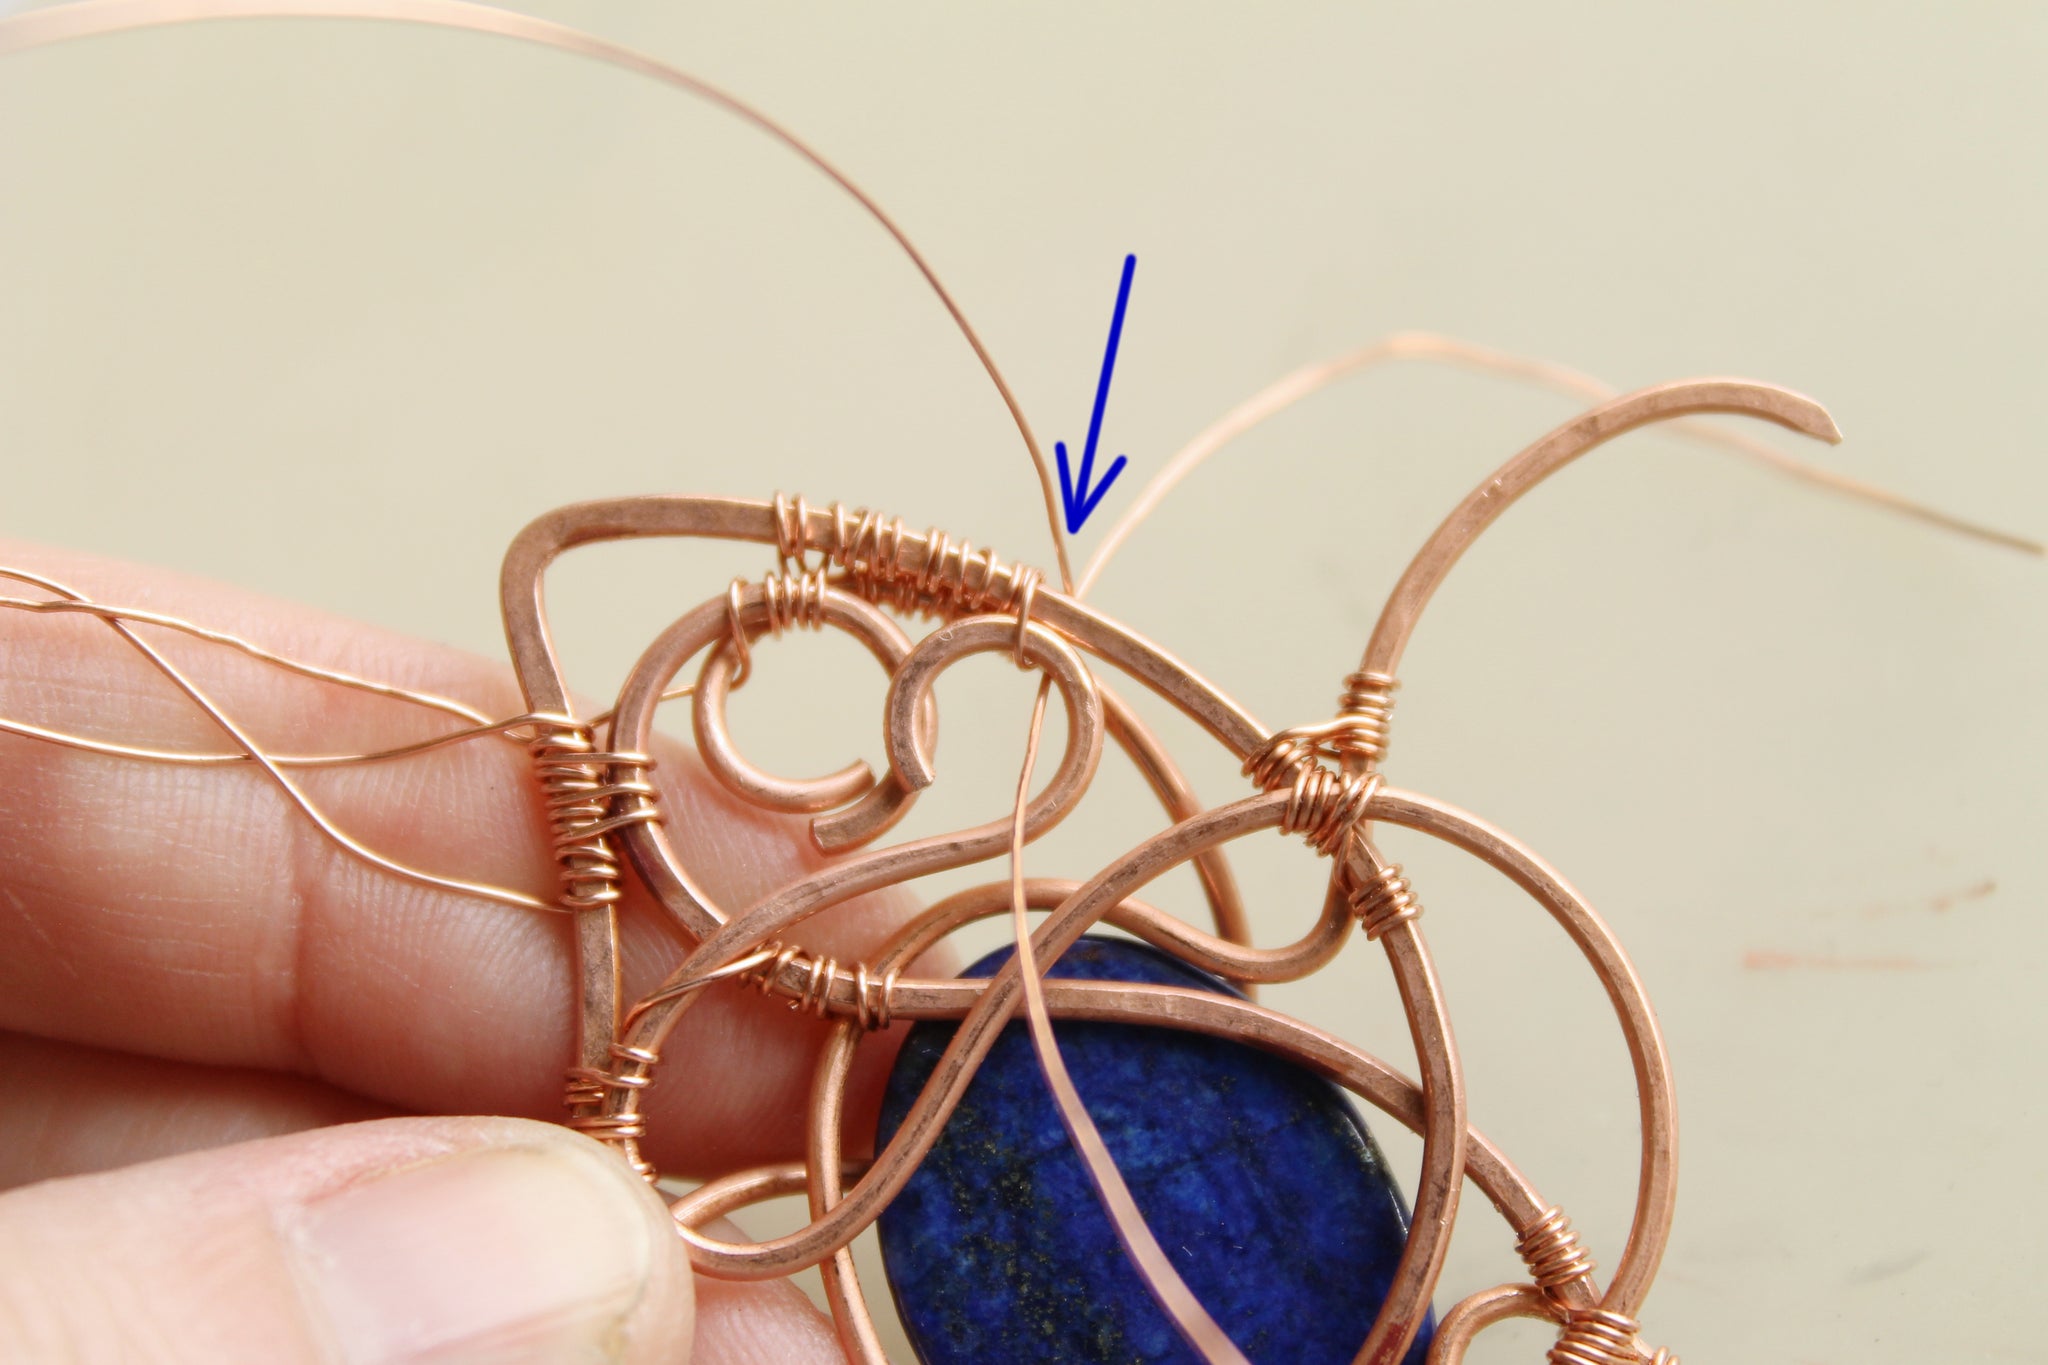 wire weaving jewelry